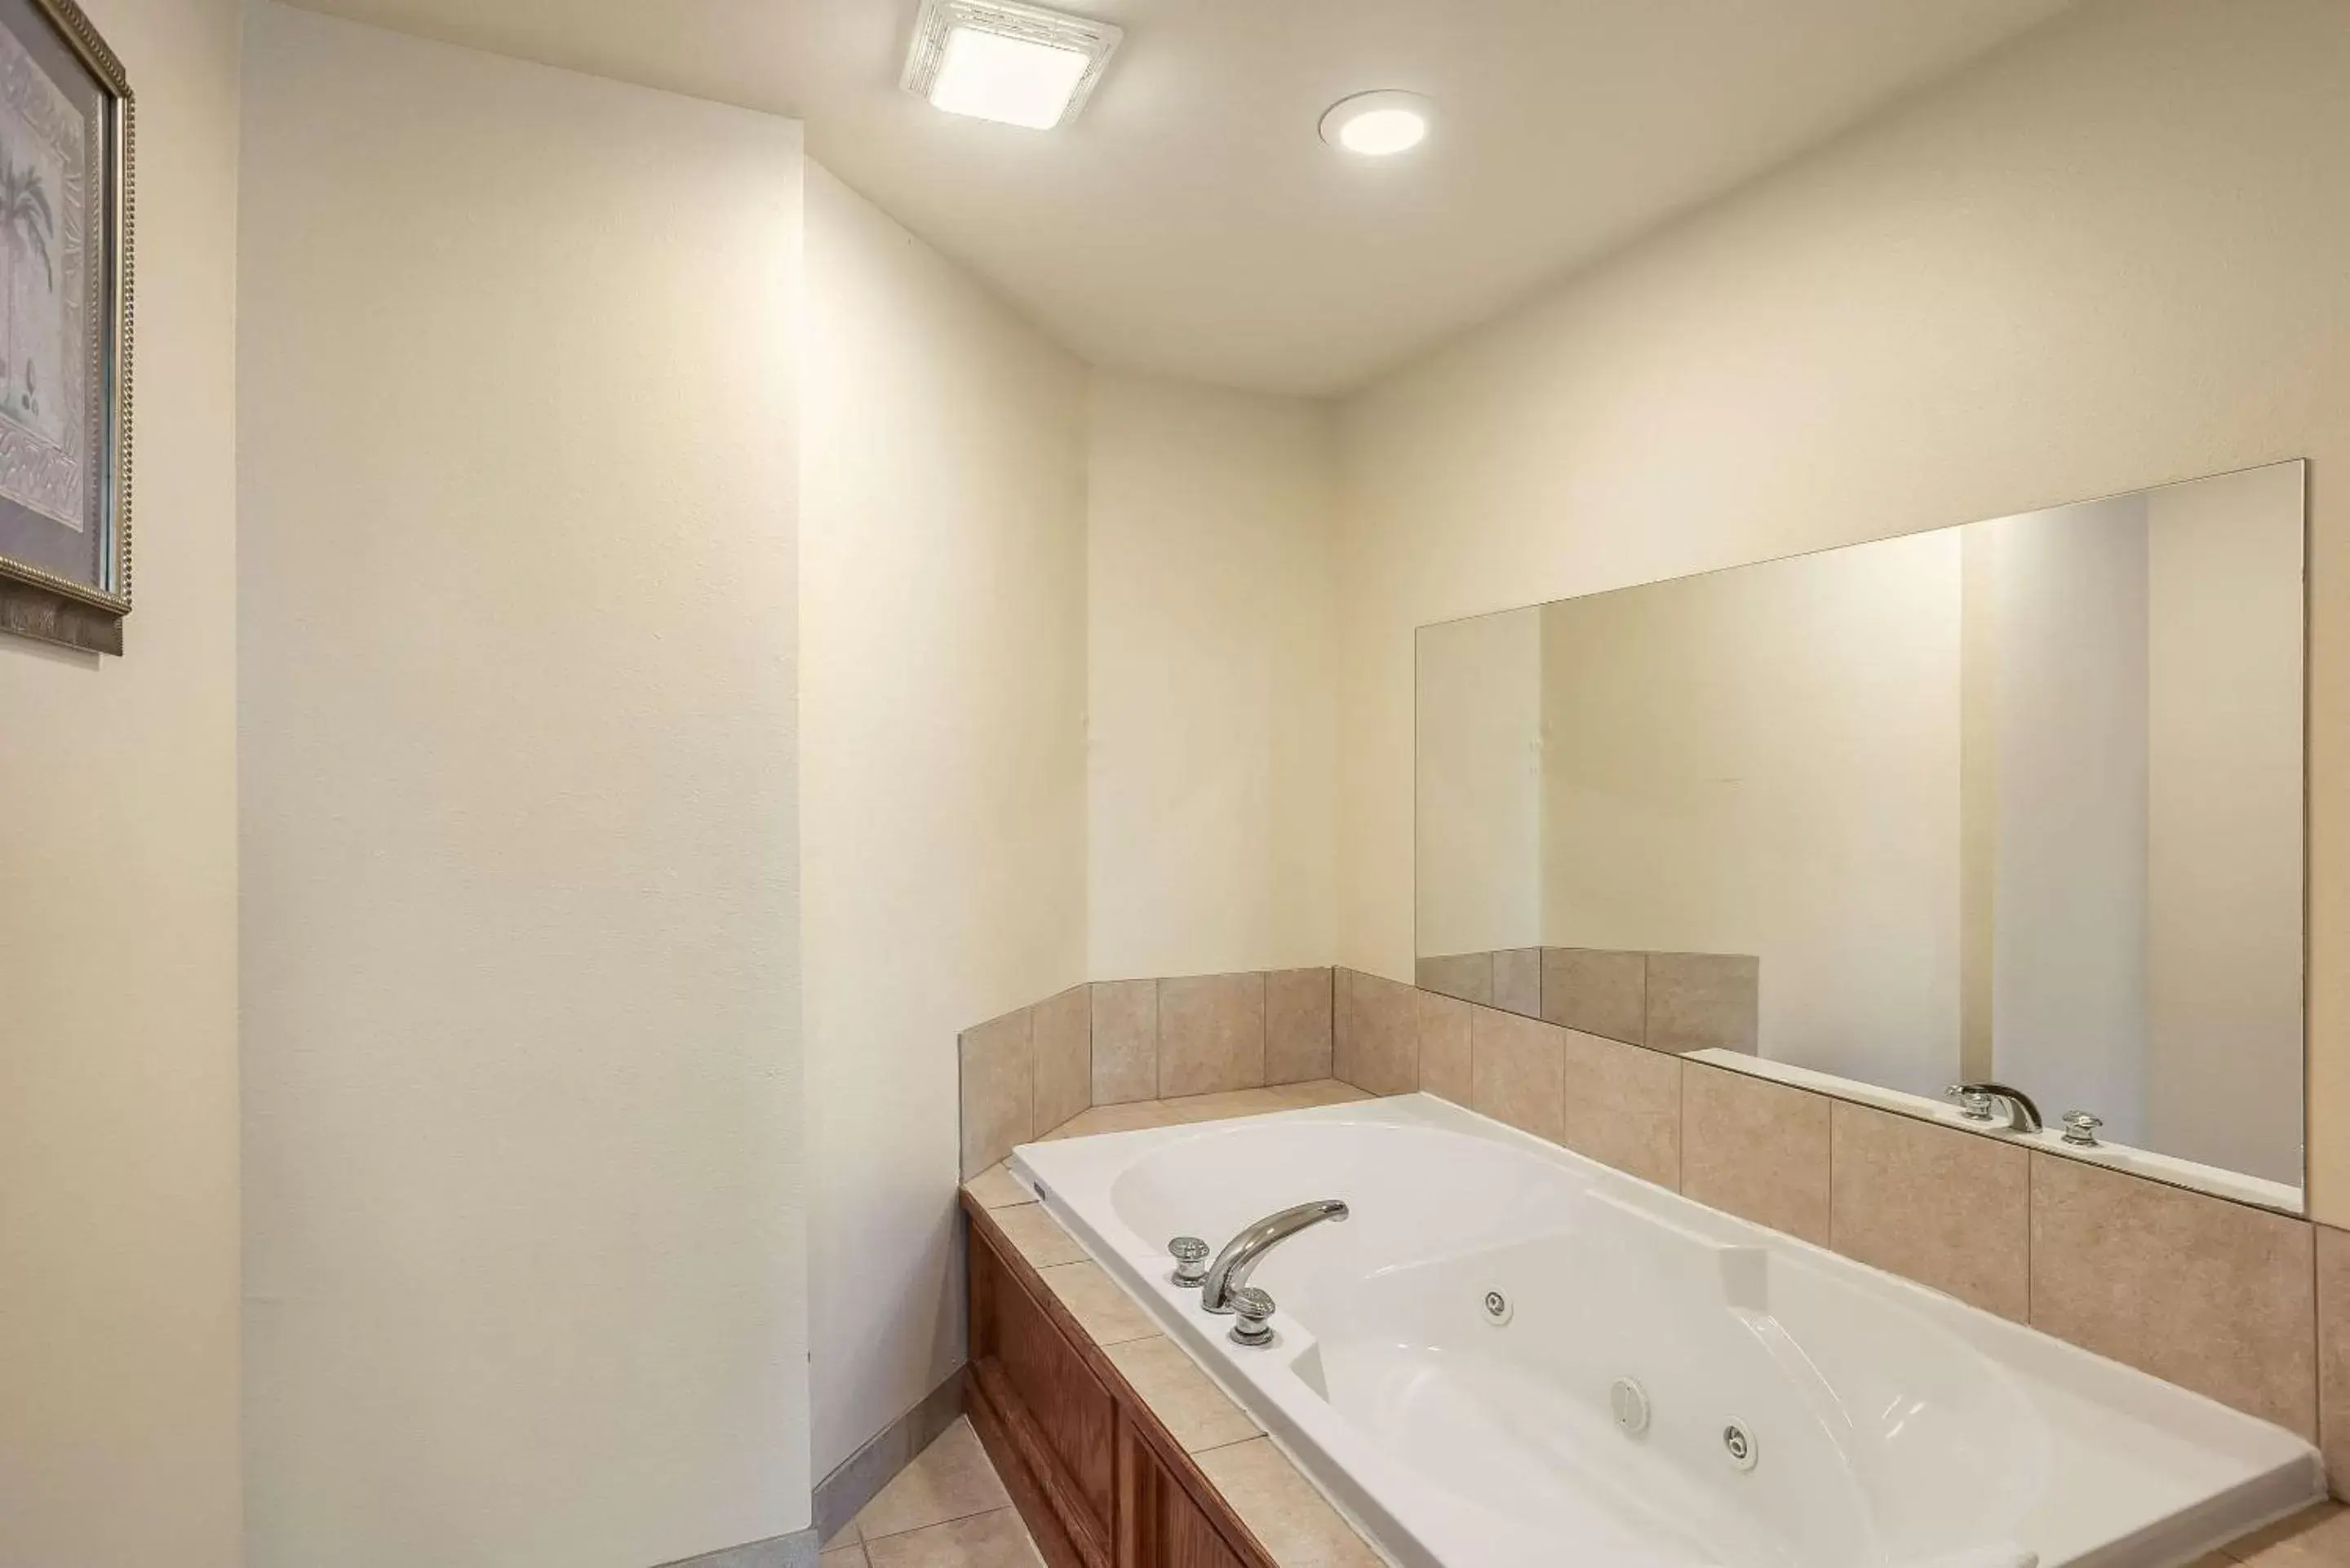 Bedroom, Bathroom in Quality Inn & Suites Hannibal